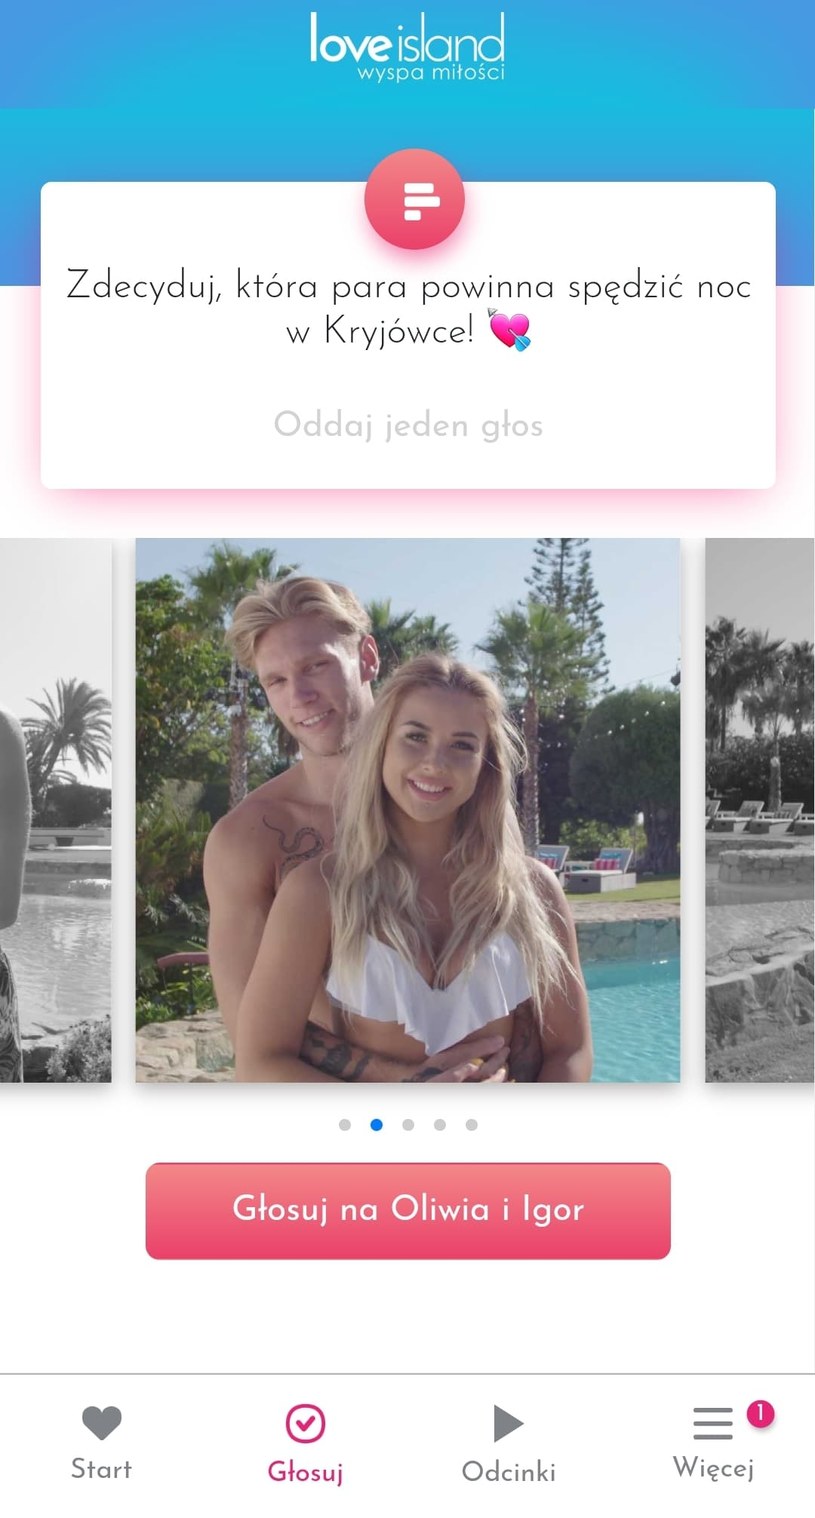 Zagłosuj w aplikacji "Wyspa miłości" na parę, która spędzi noc w kryjówce! /Polsat/Ipla